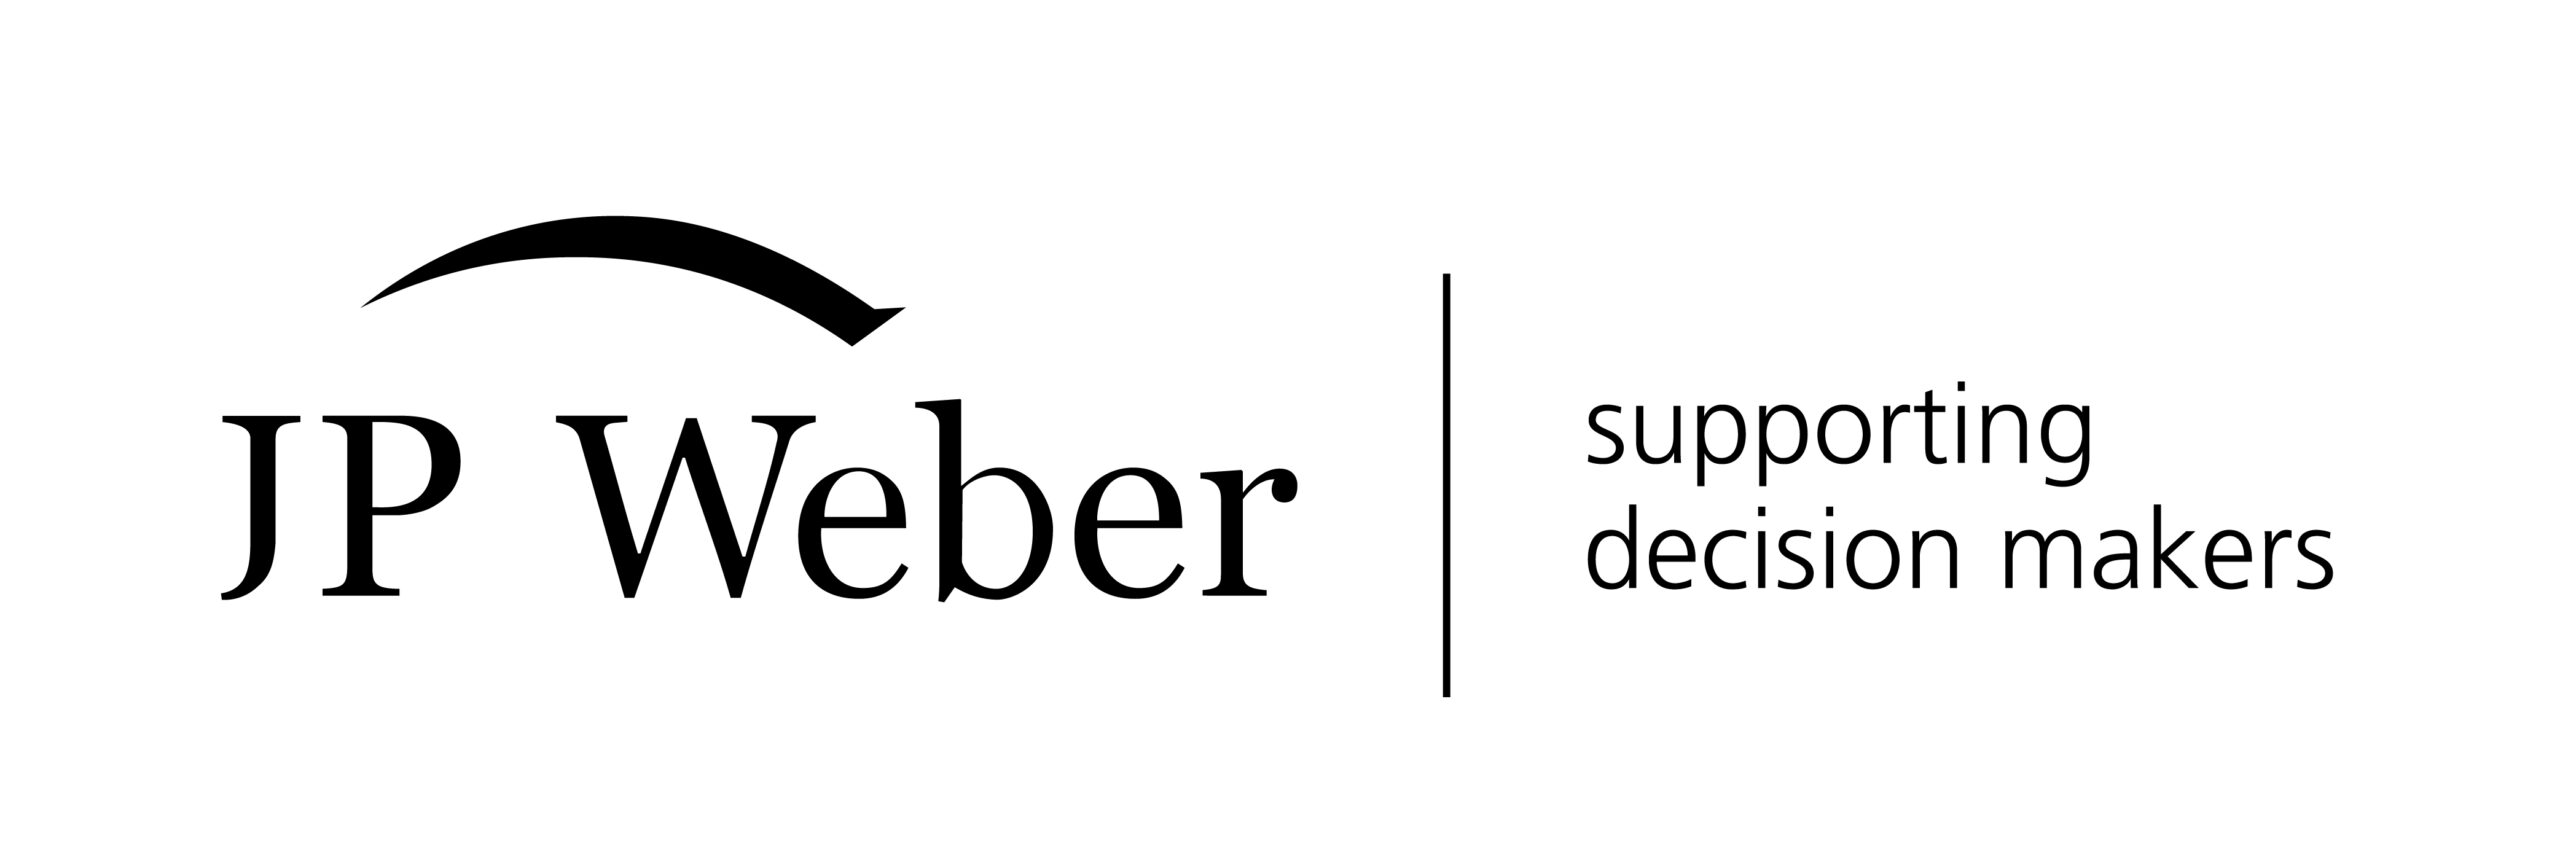 JP Weber logo